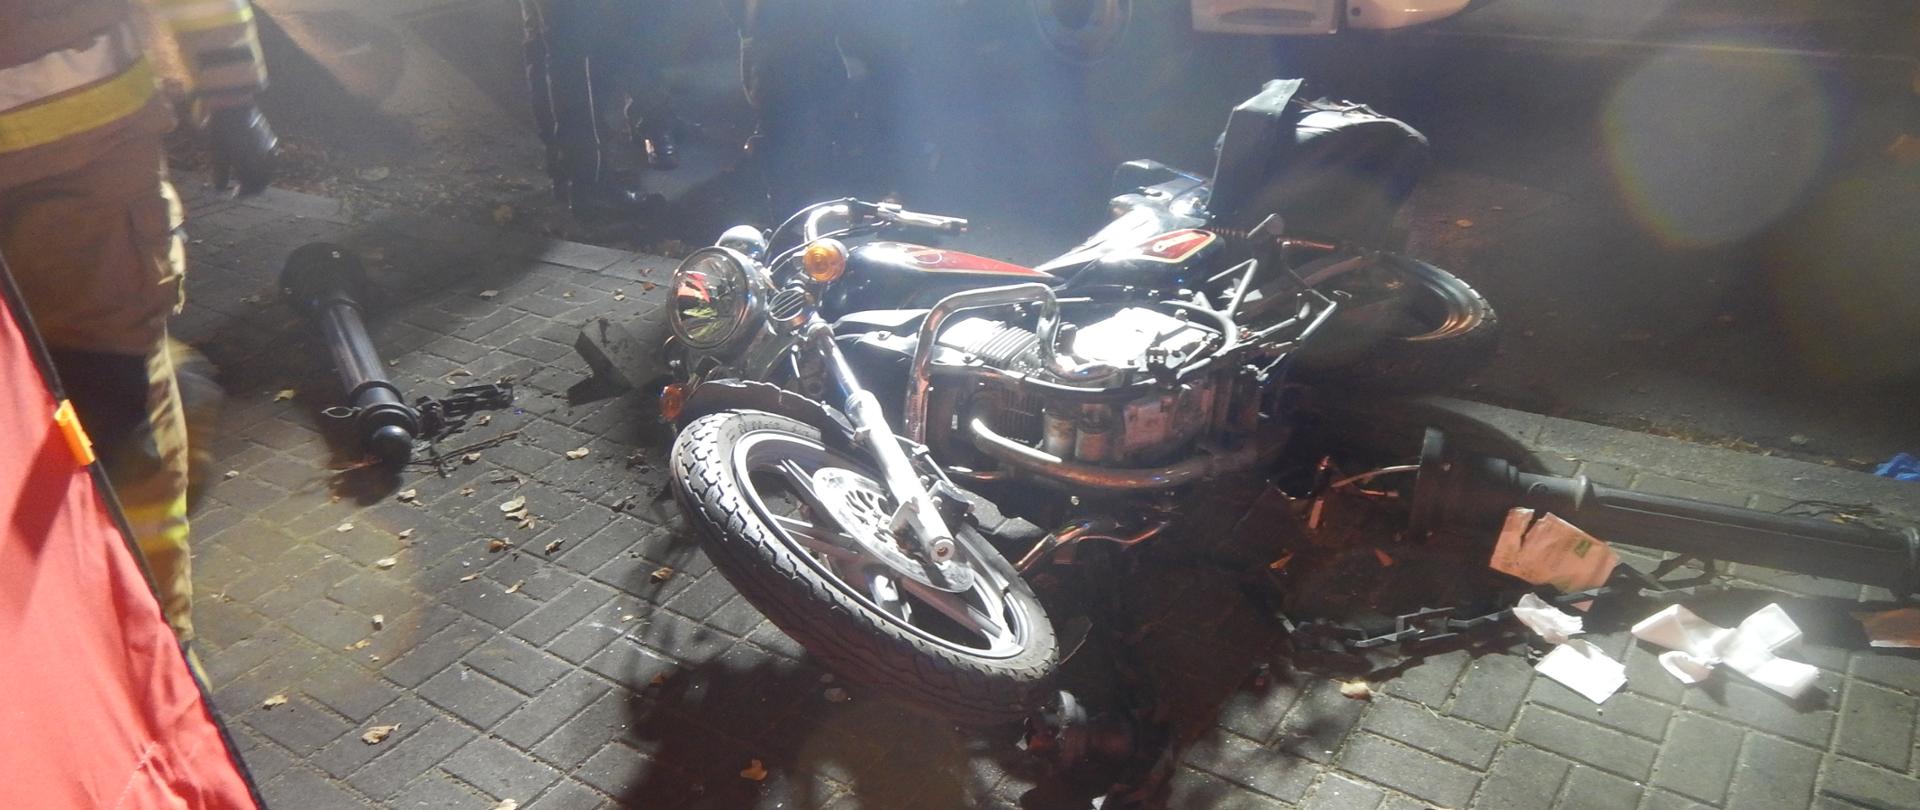 Zdjęcie przedstawia motocykl, który brał udział w zdarzeniu